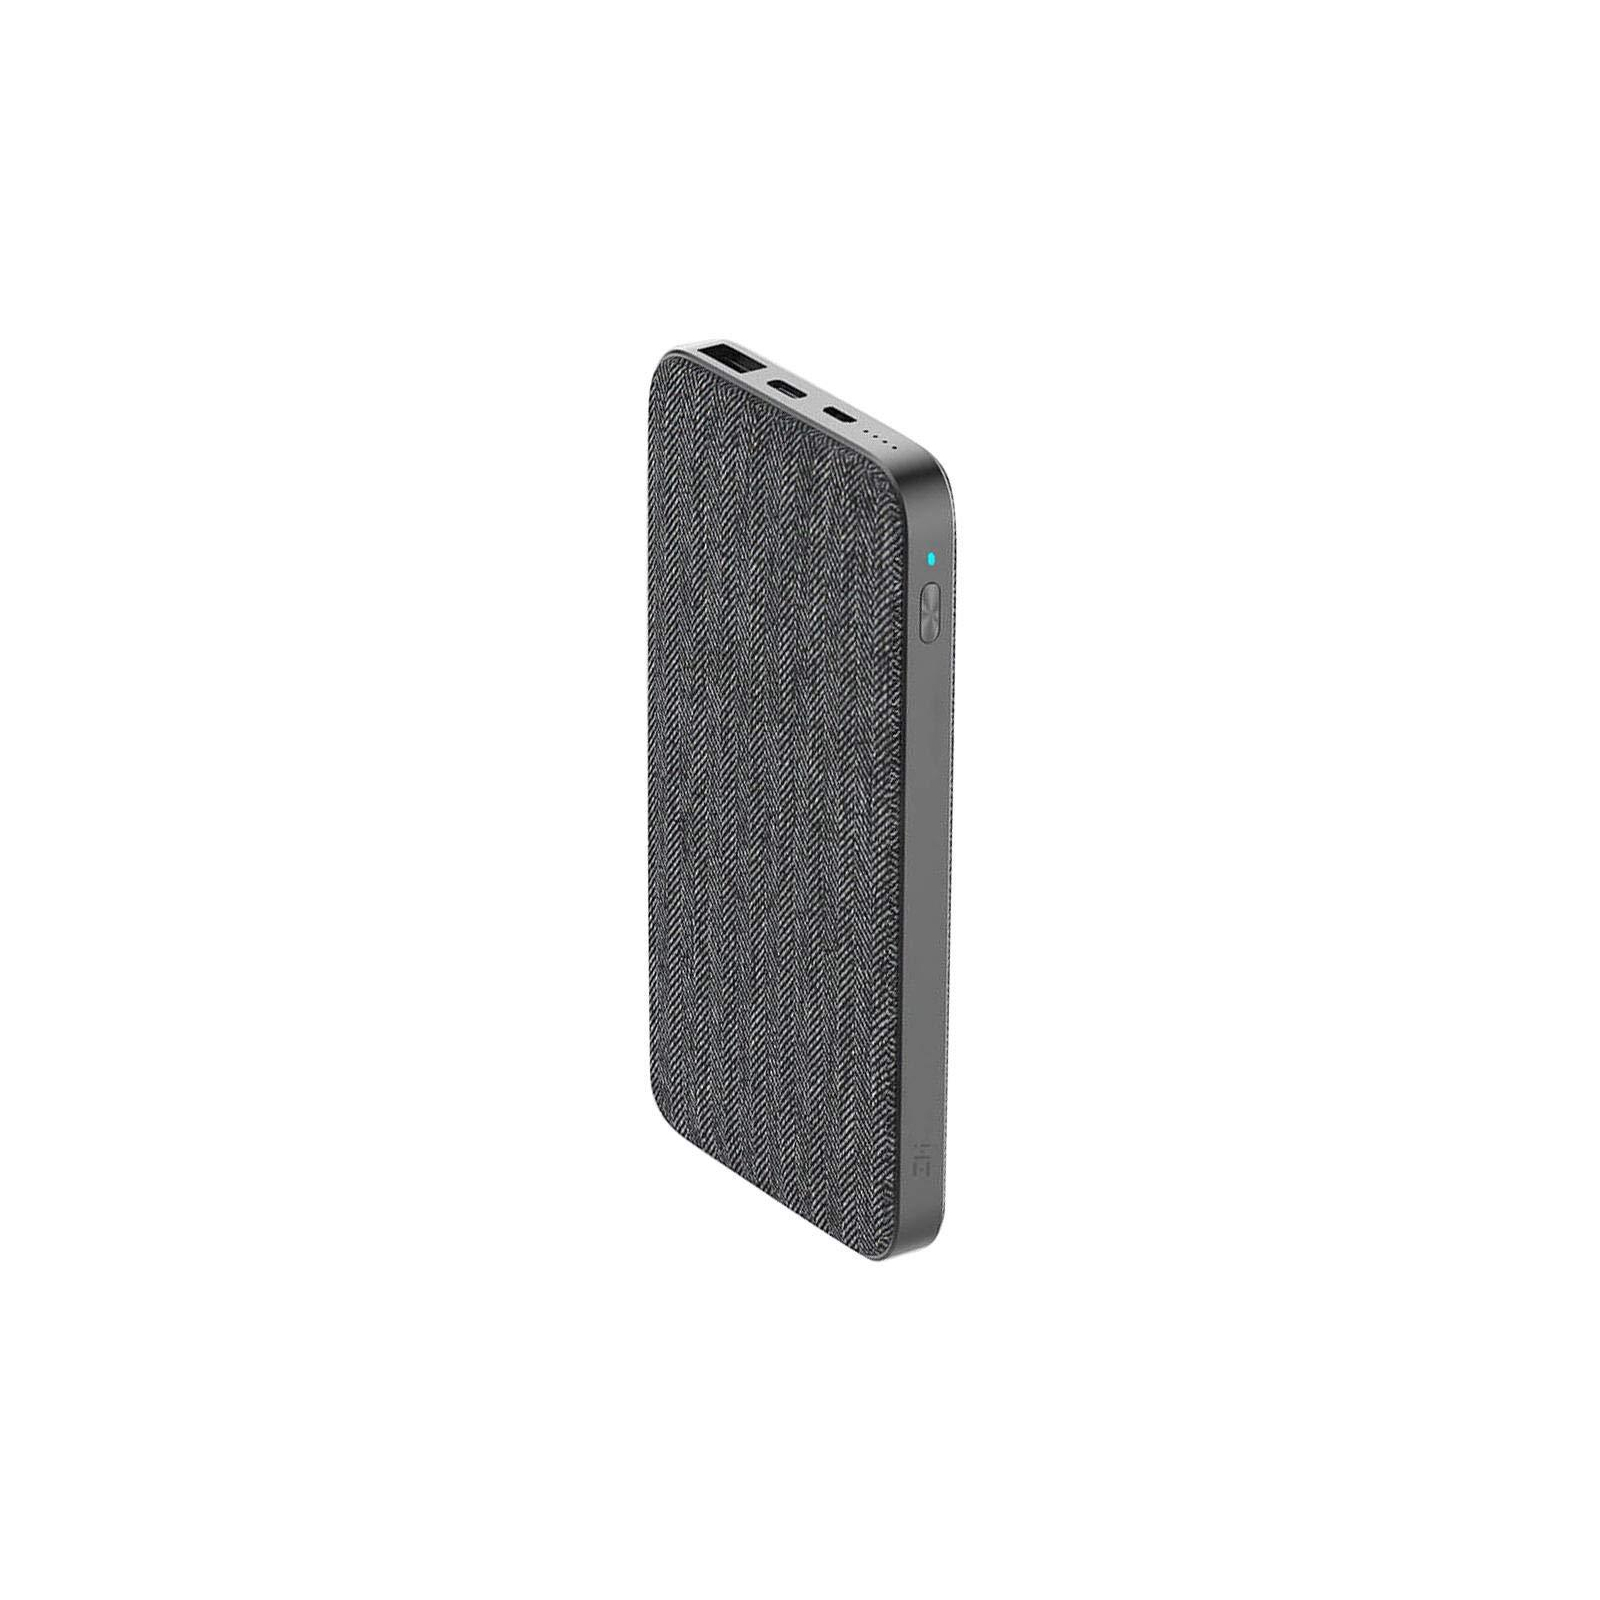 Батарея универсальная ZMI QB910 10000mAh Type-C Grey (QB910) изображение 2